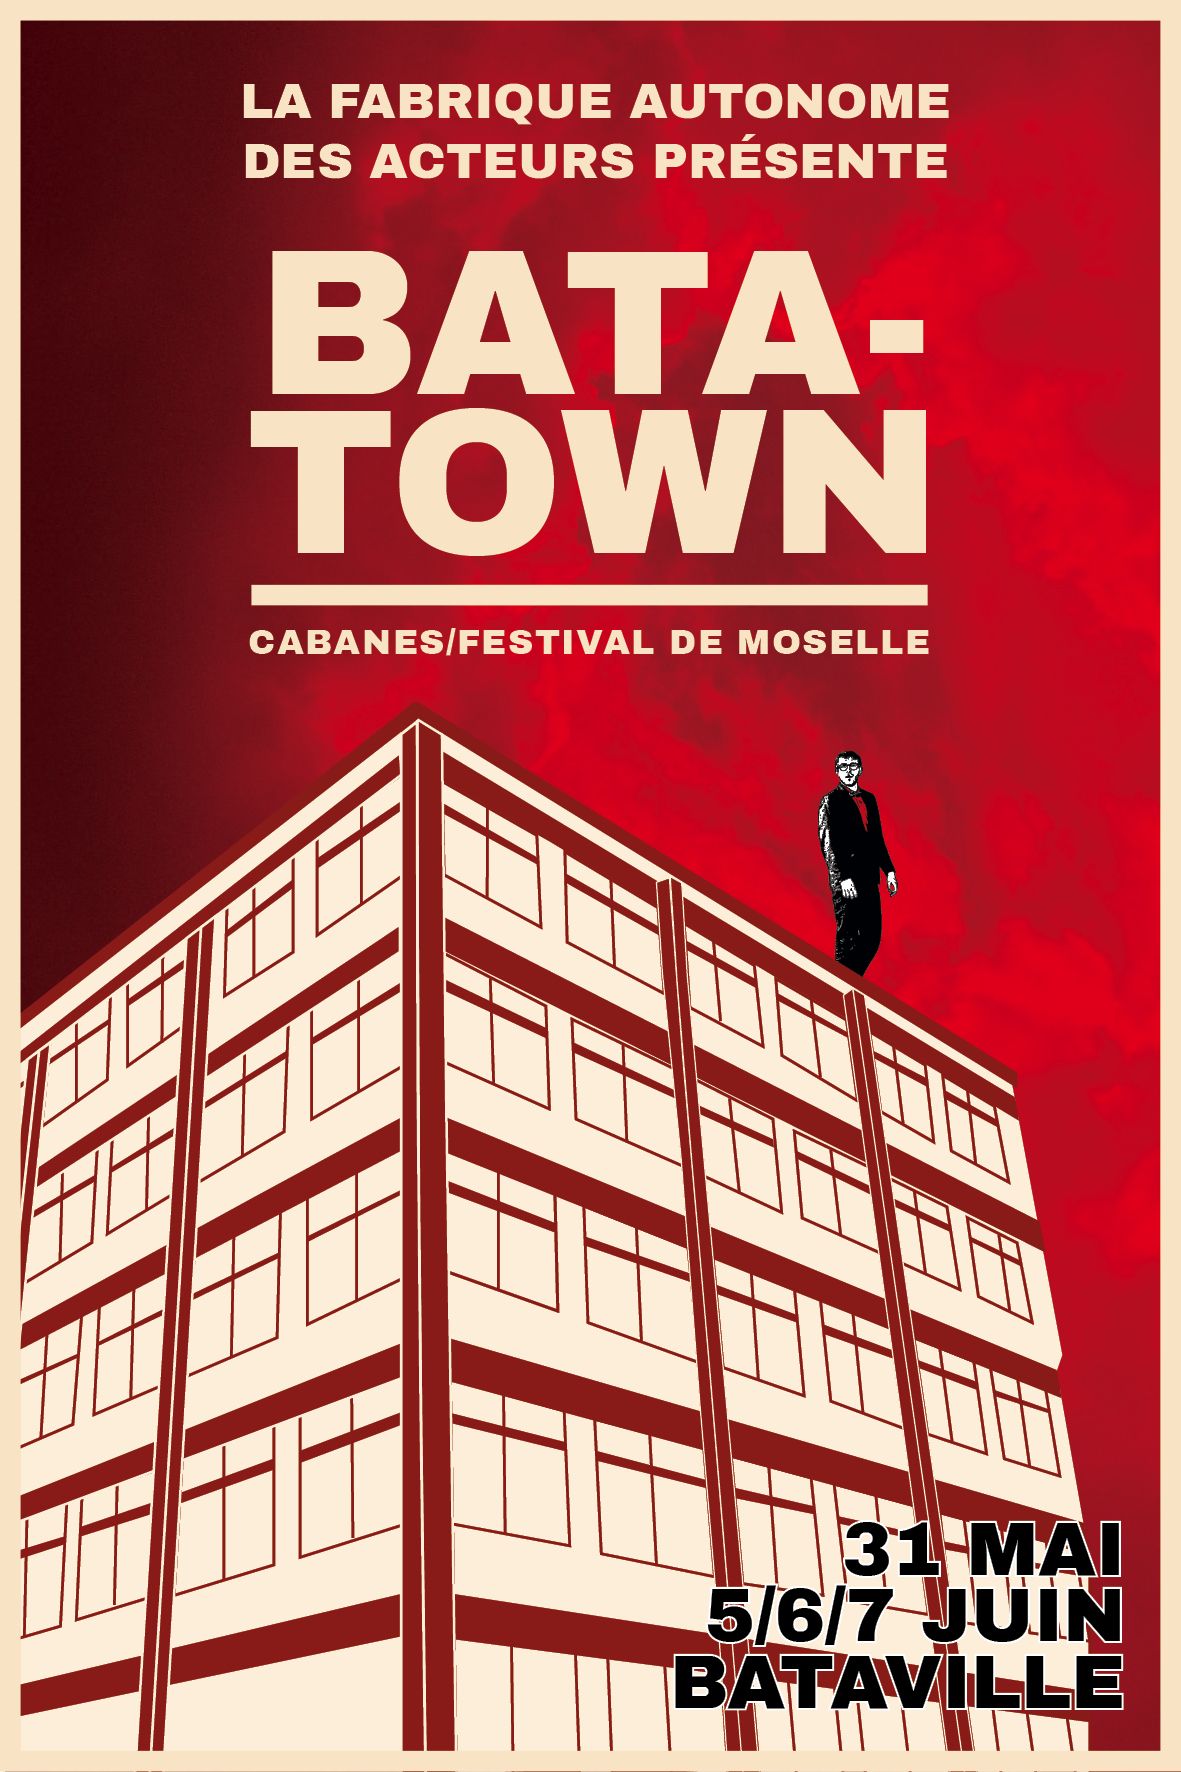 Bata town